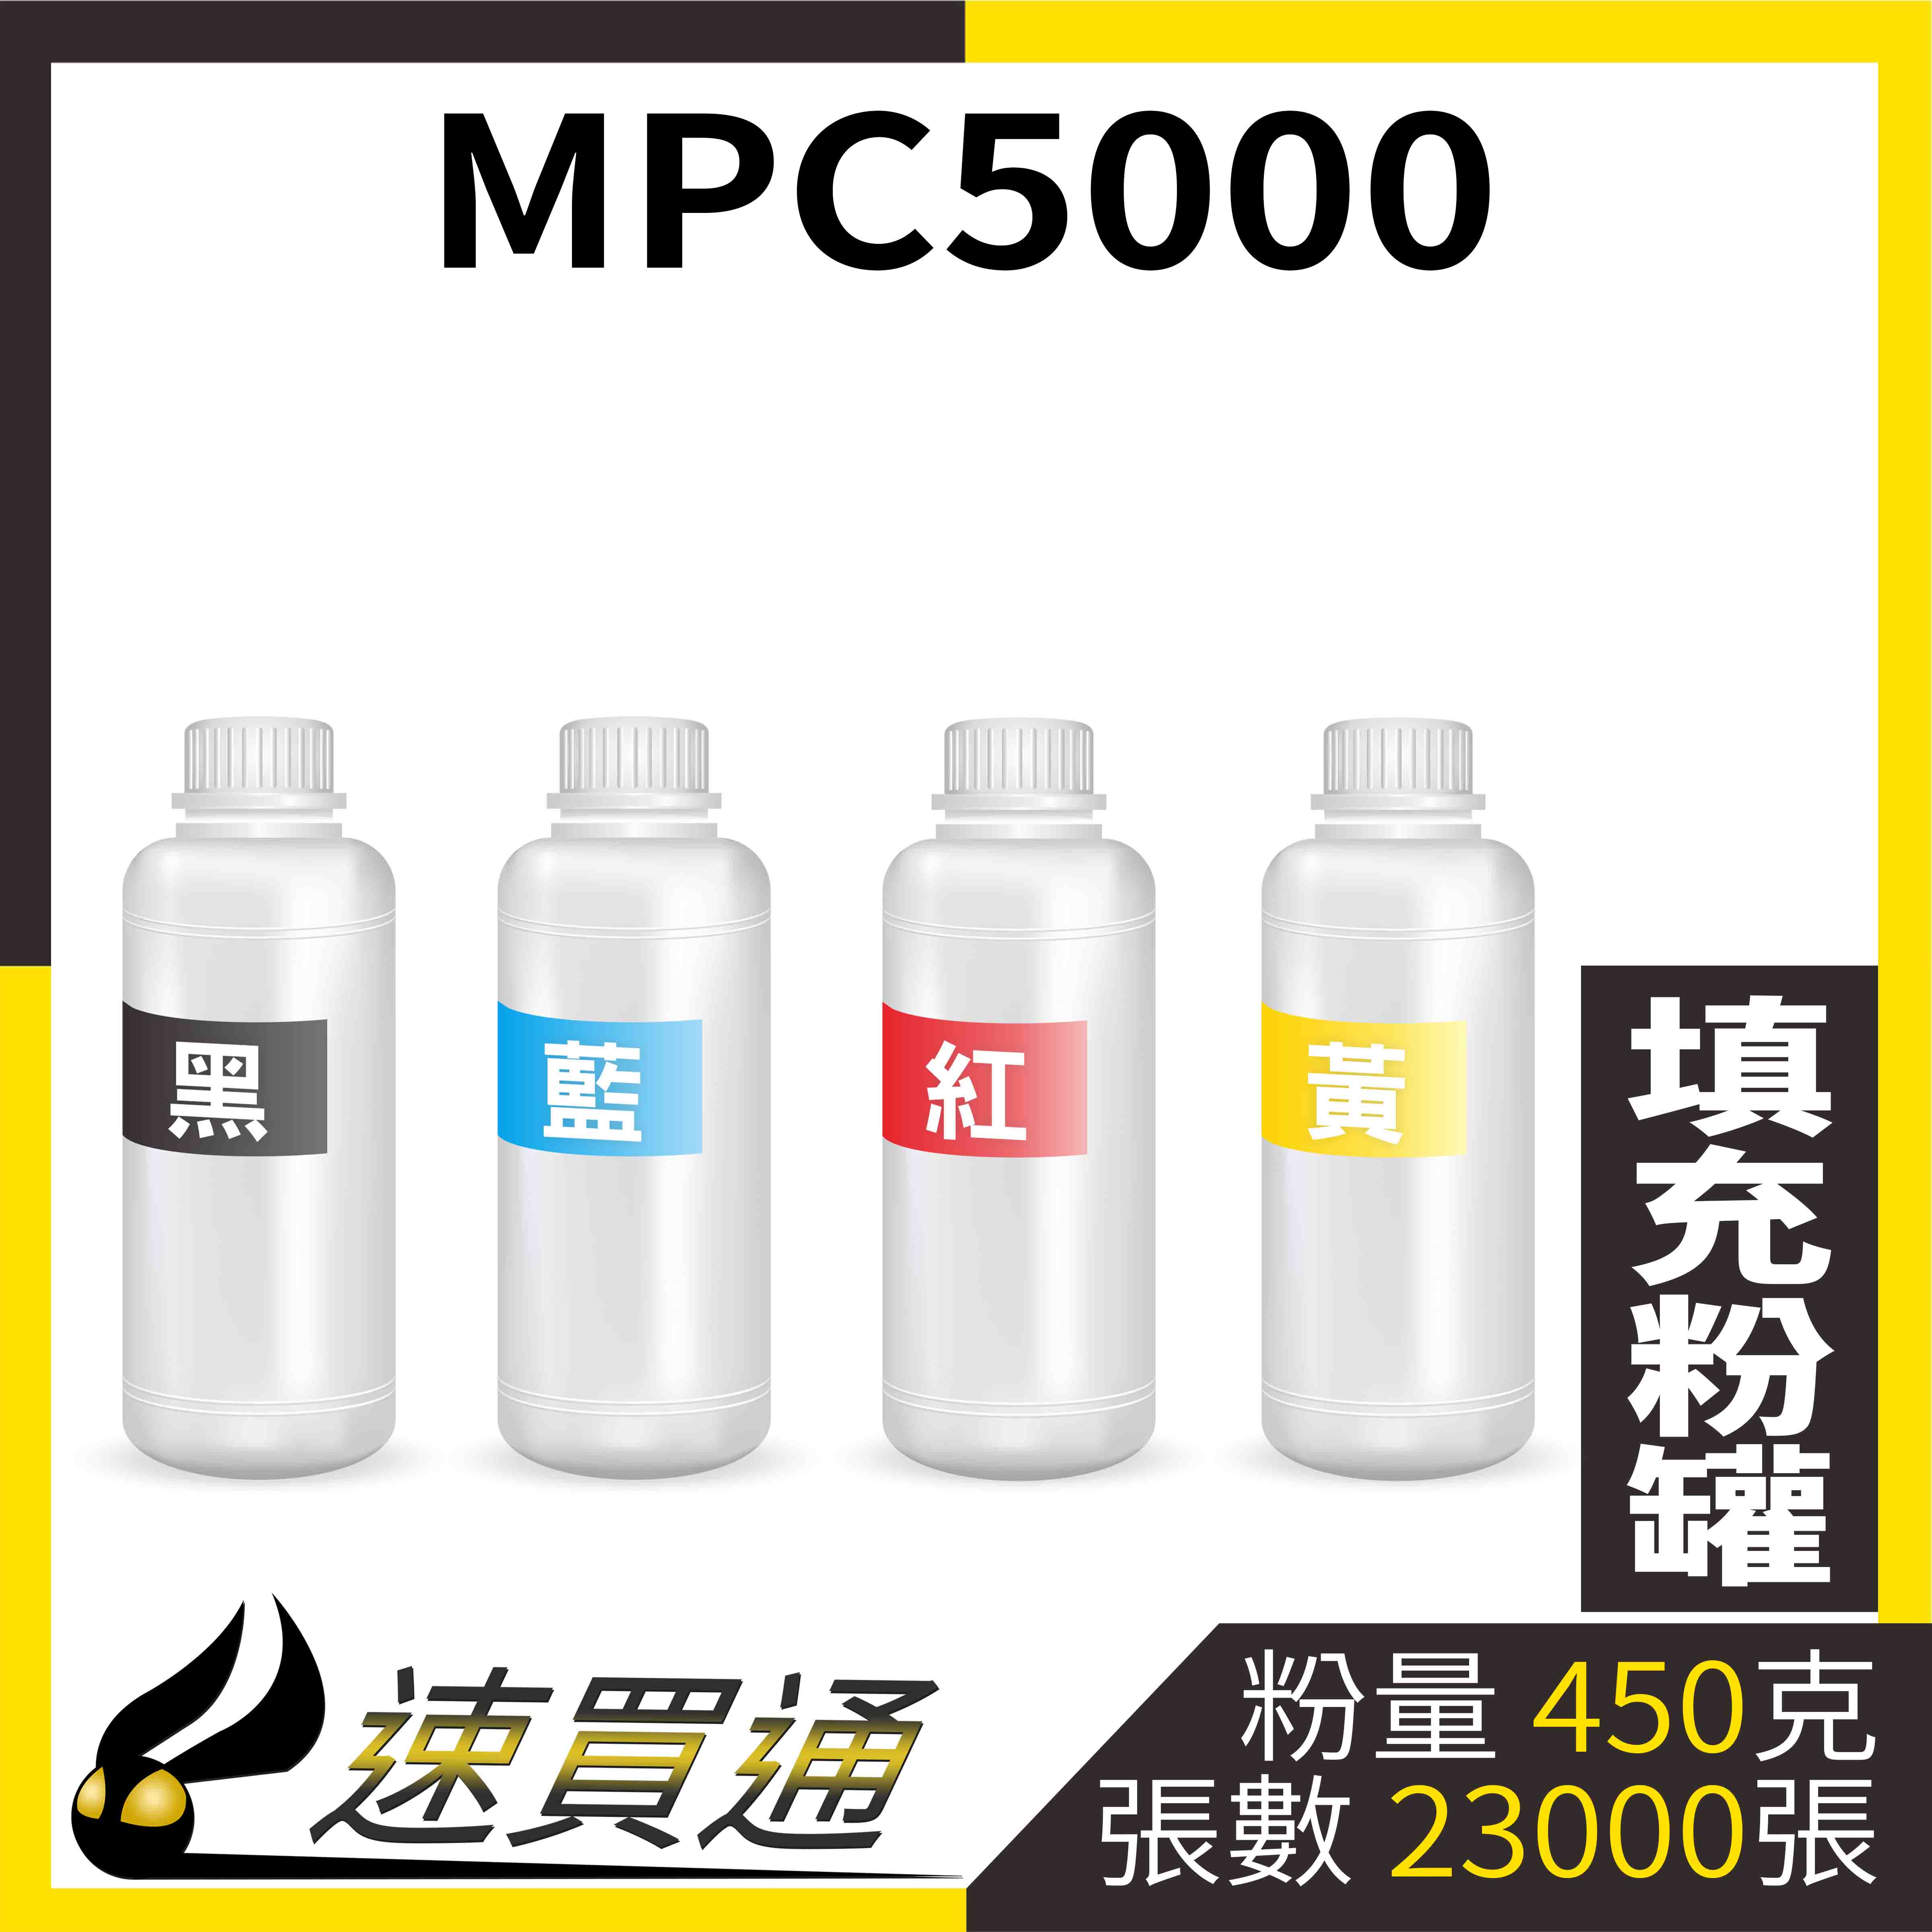 【速買通】RICOH MPC5000 四色綜合 填充式碳粉罐